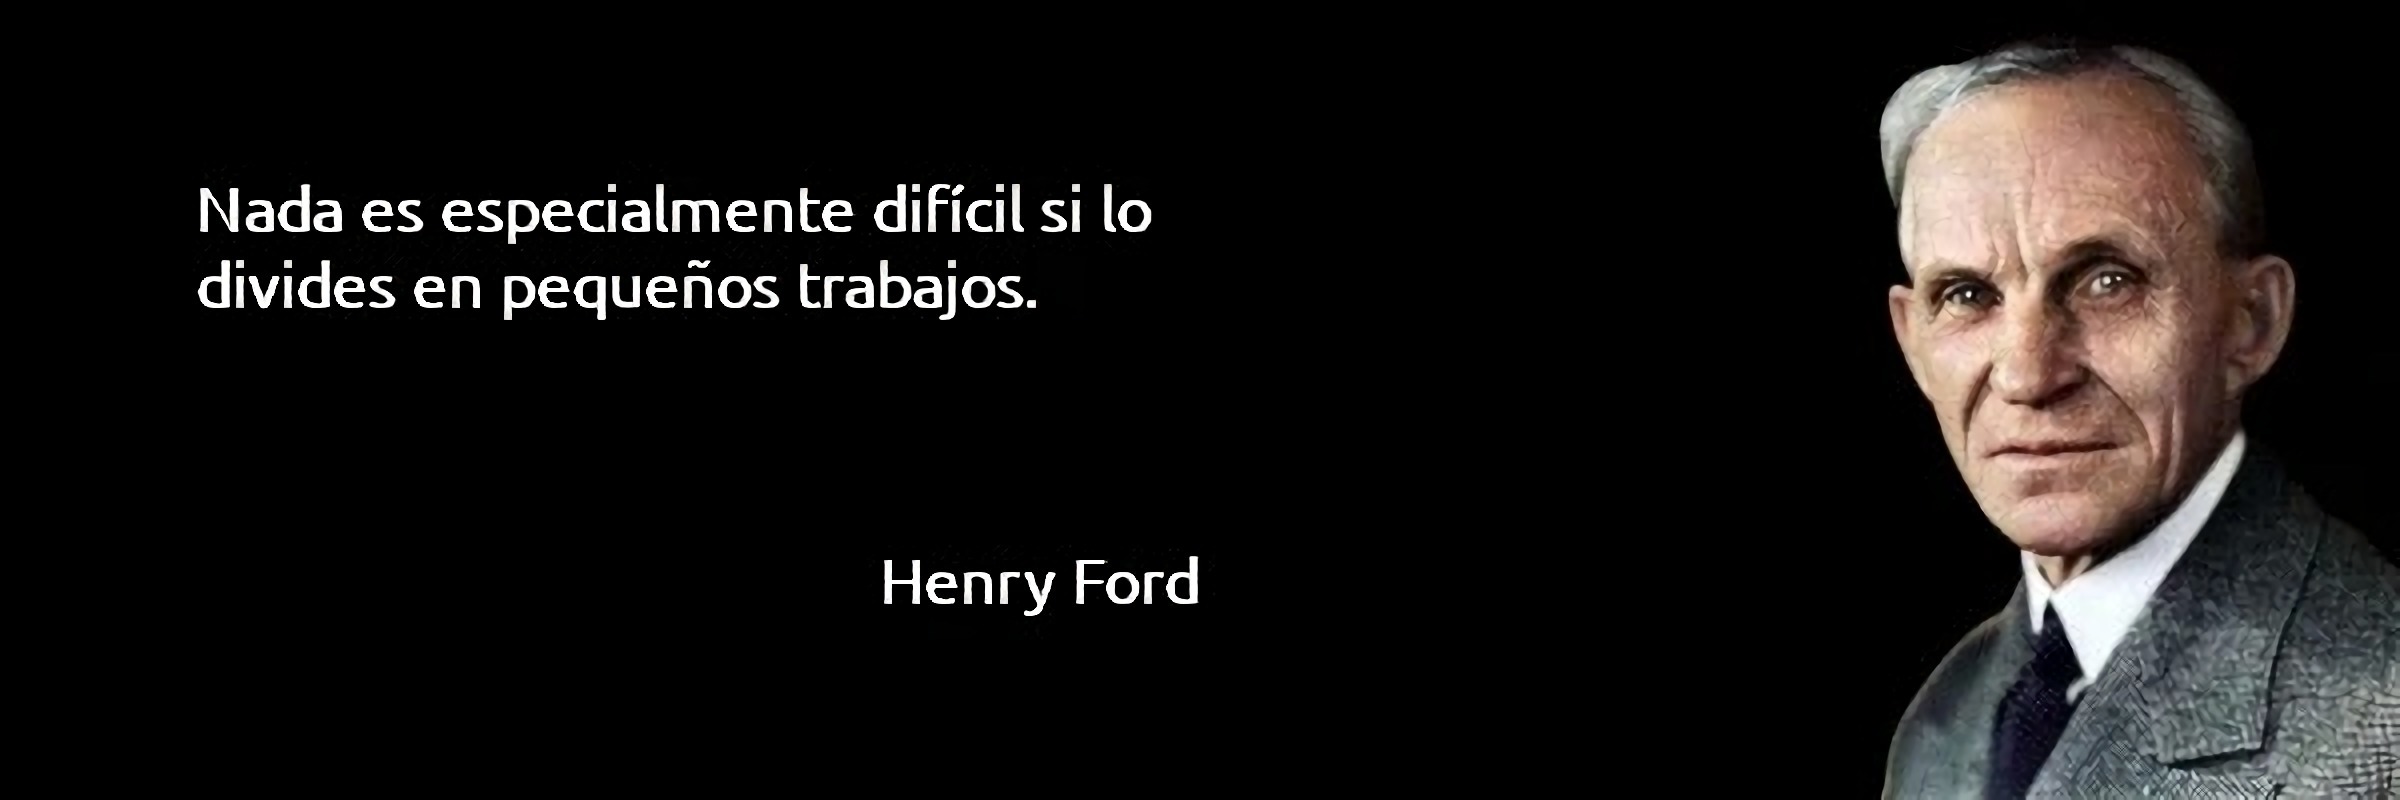 Nada es especialmente difícil si lo divides en pequeños trabajos. Henry Ford